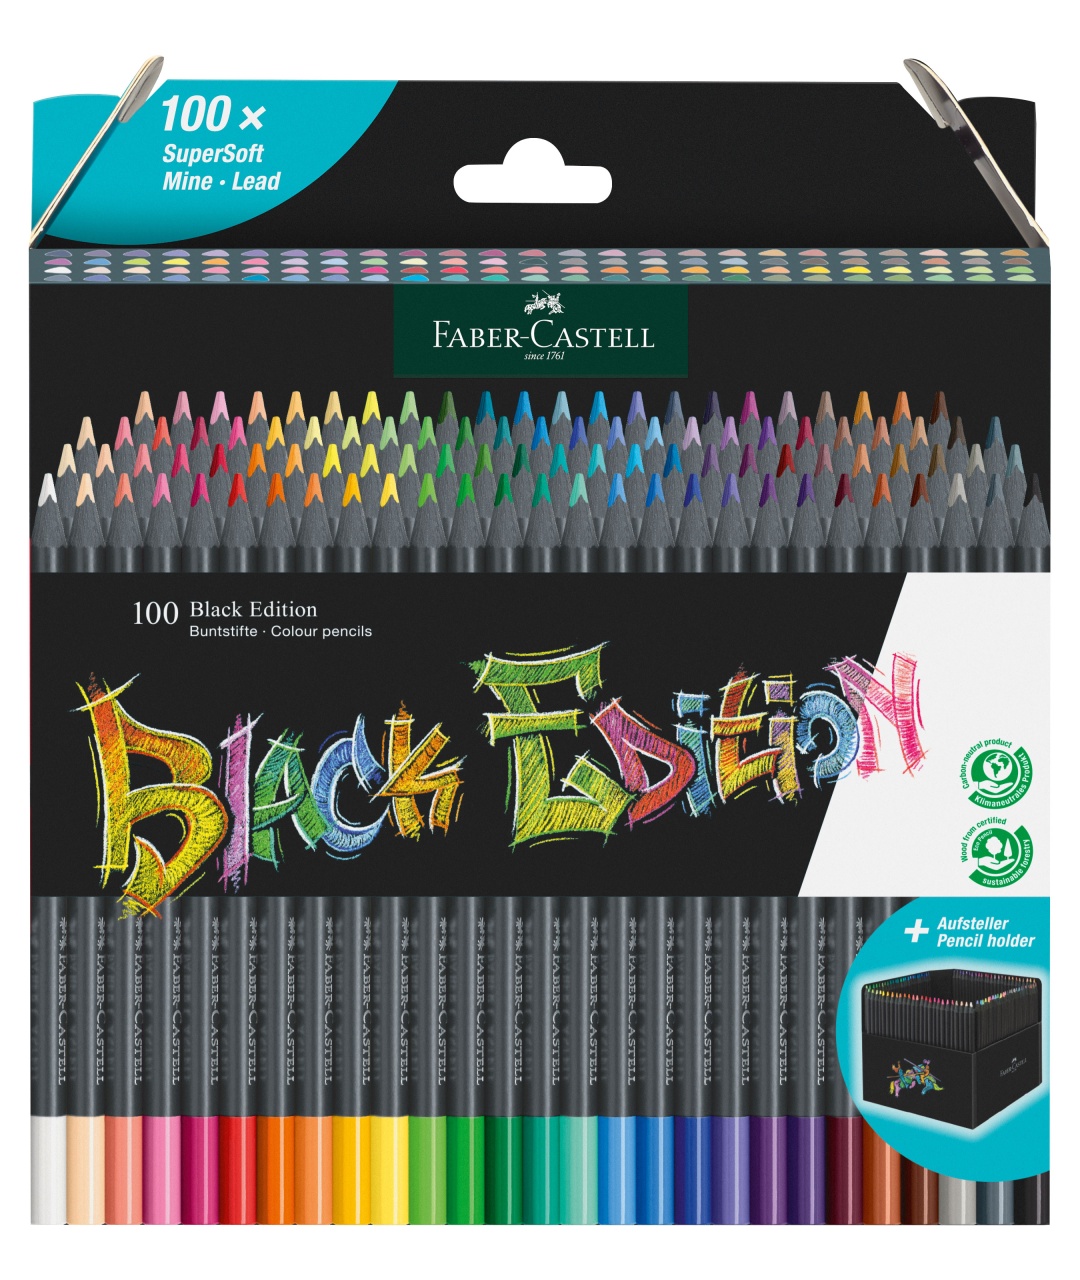 Faber-Castell Buntstifte Black Edition 100er Set